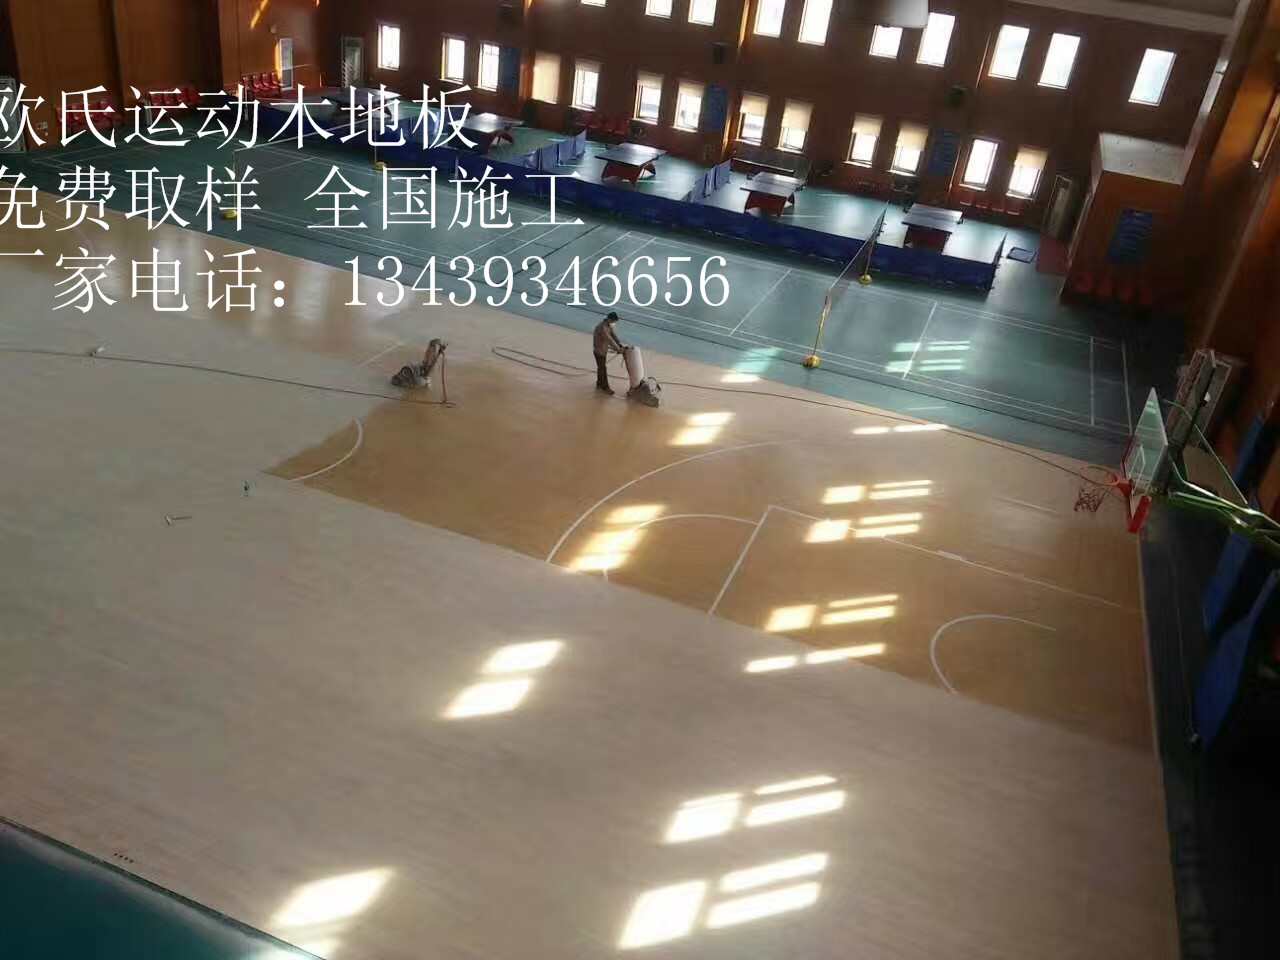 篮球馆专业木地板施工工序